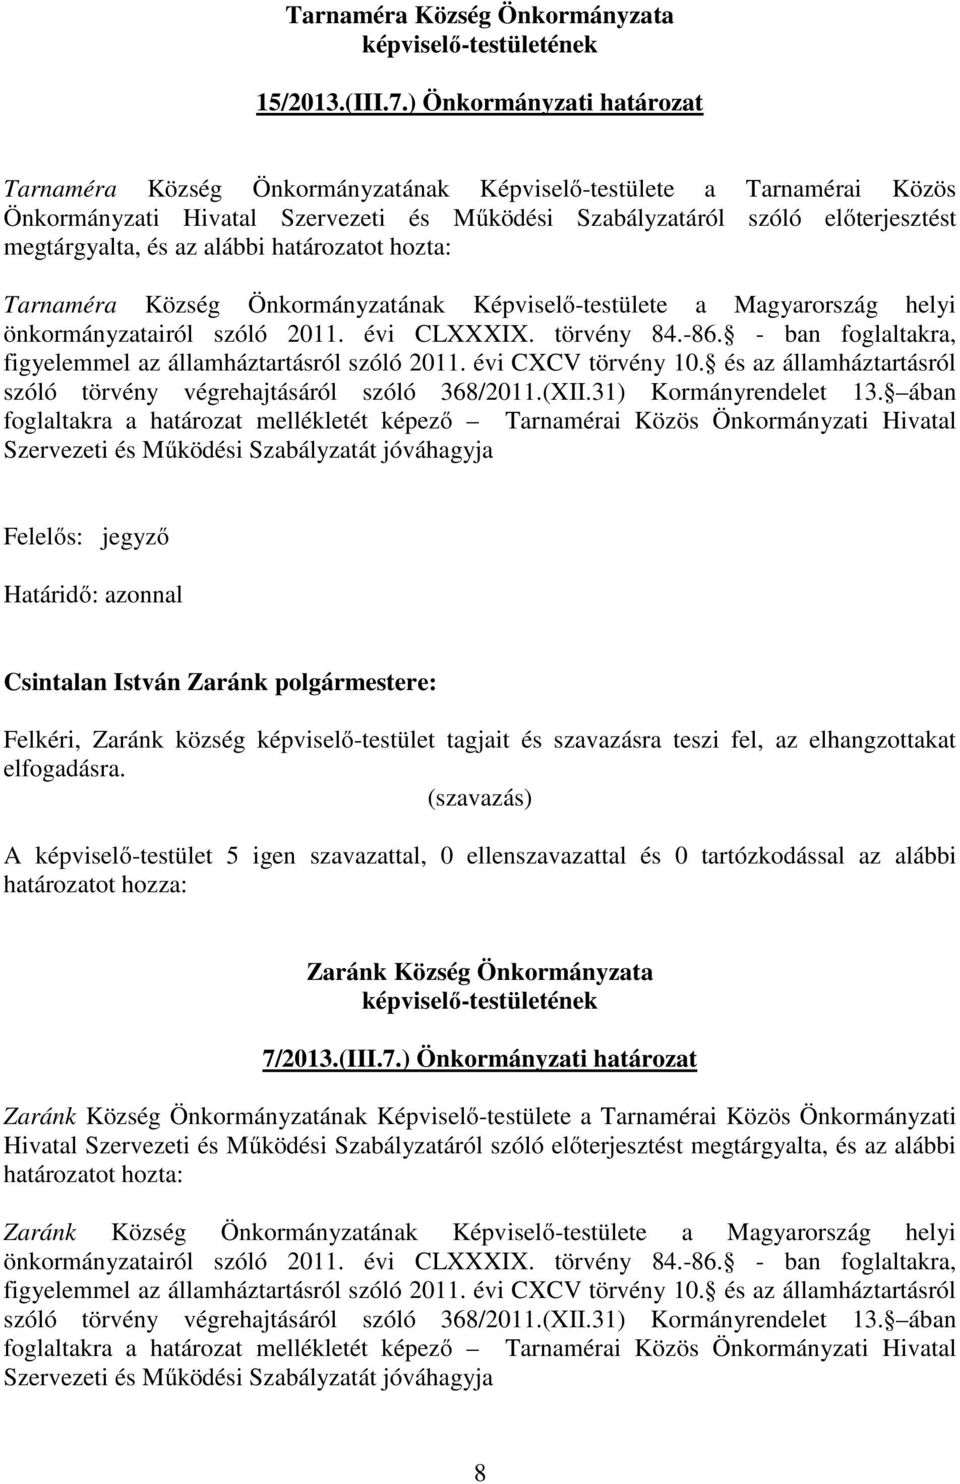 alábbi határozatot hozta: Tarnaméra Község Önkormányzatának Képviselő-testülete a Magyarország helyi önkormányzatairól szóló 2011. évi CLXXXIX. törvény 84.-86.